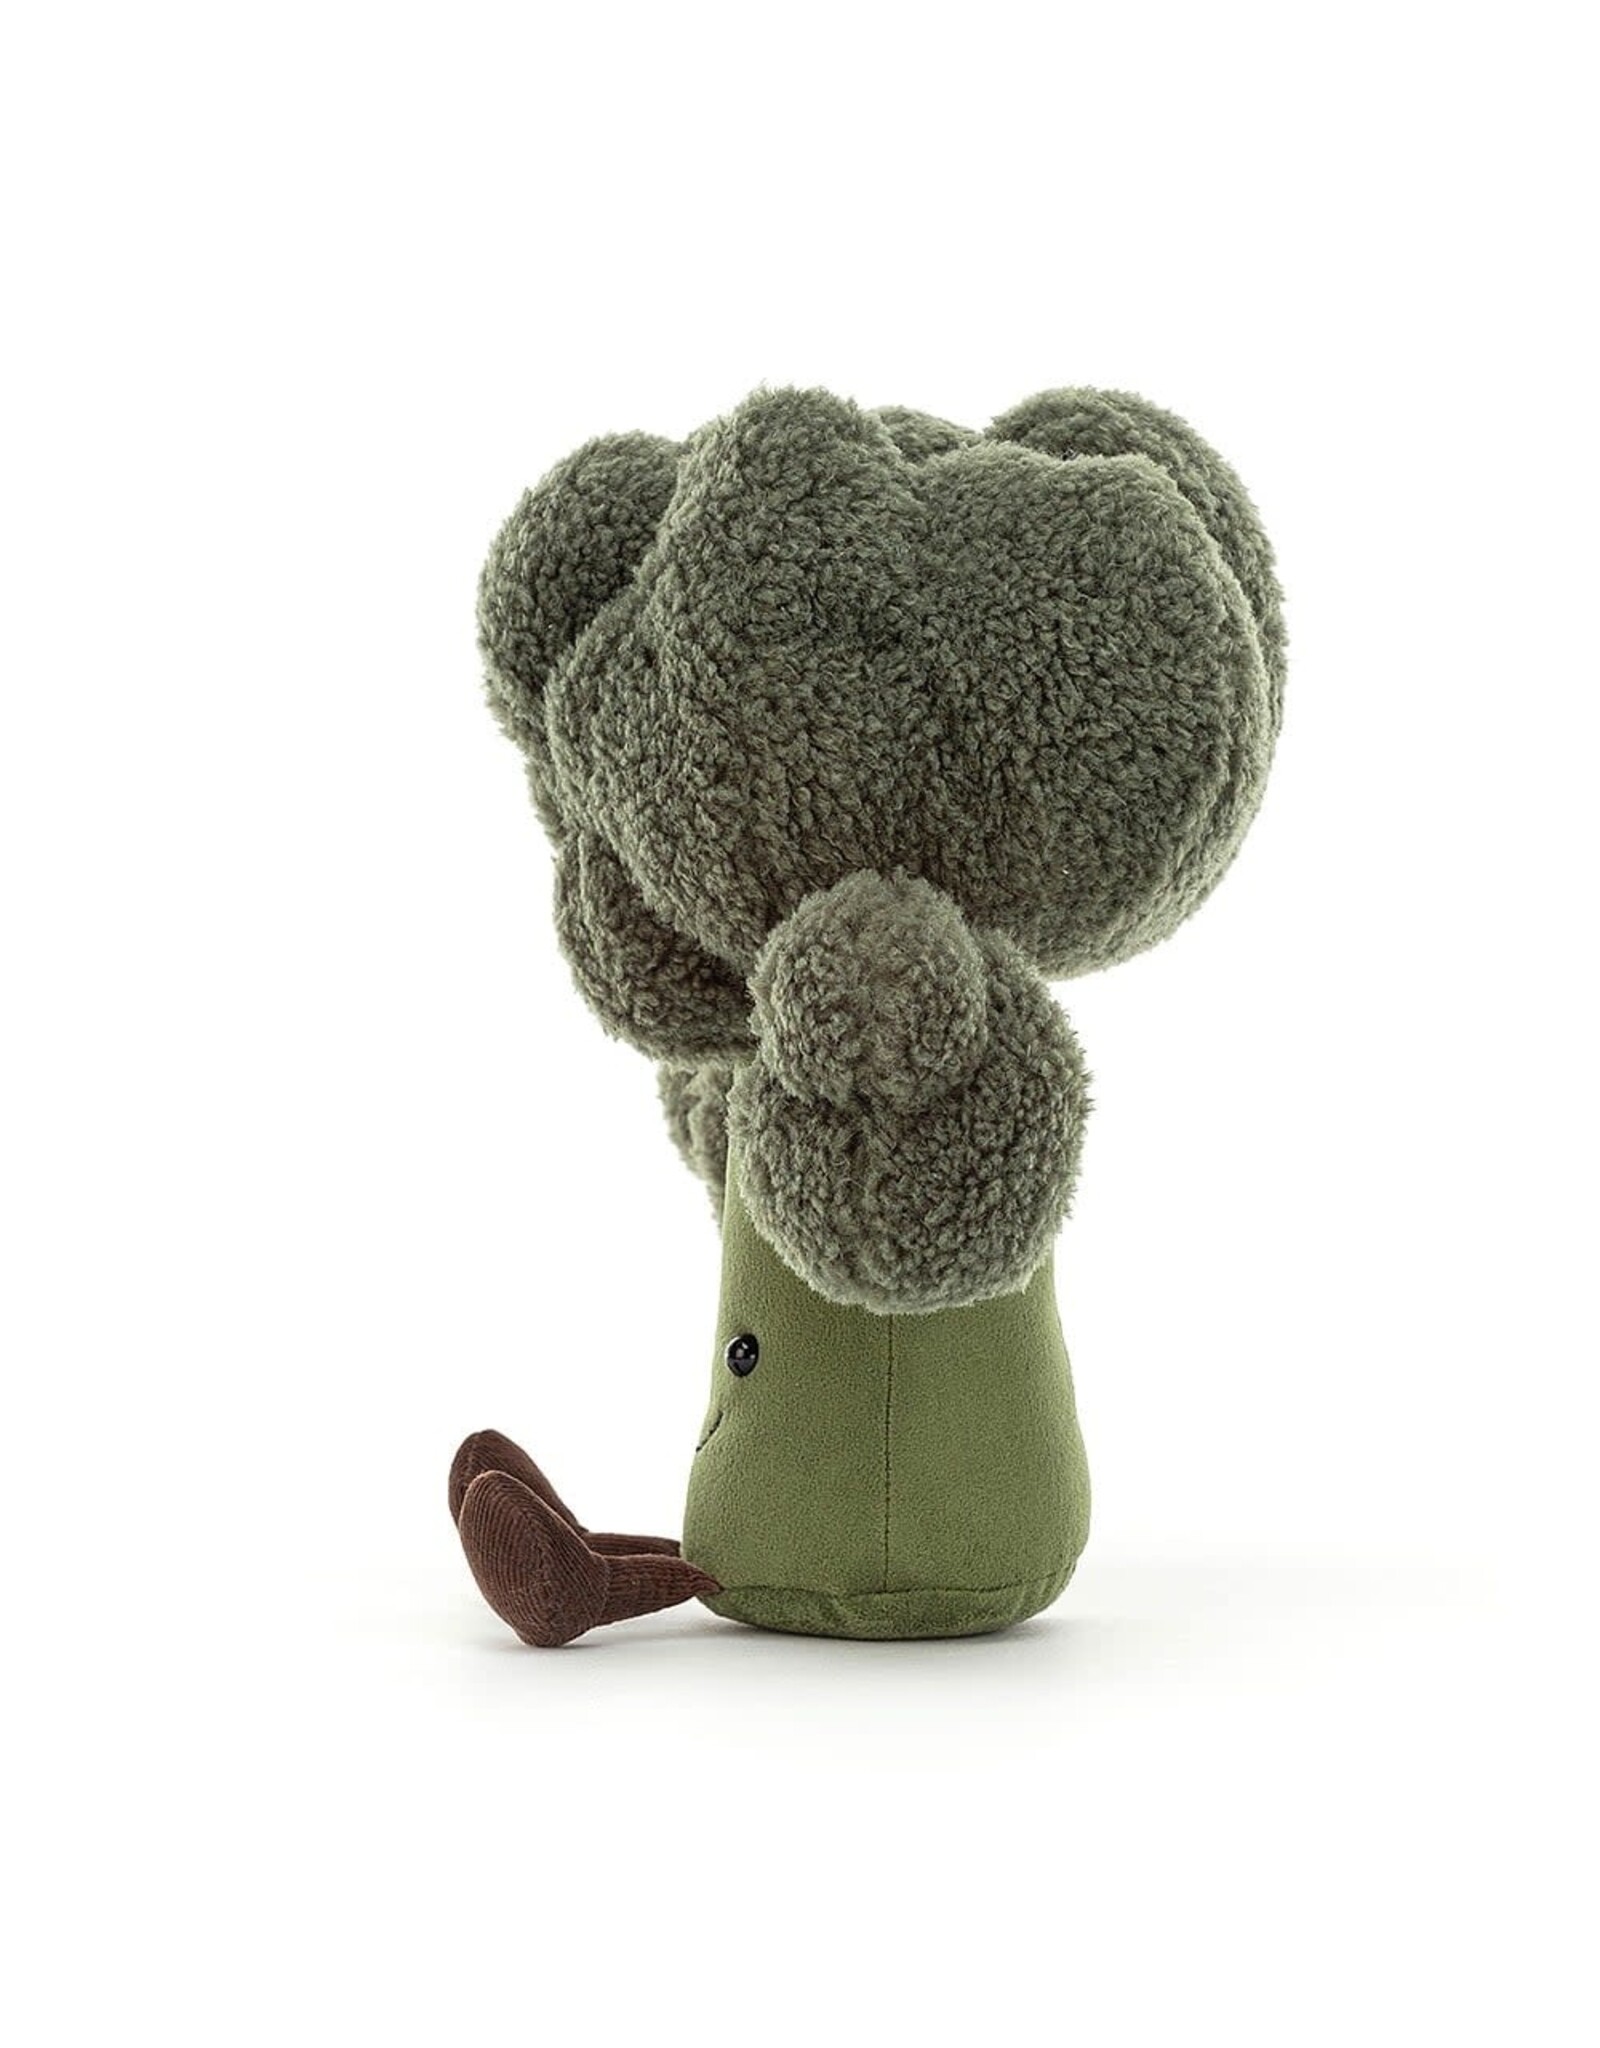 Jellycat Knuffel - Amuseable Broccoli